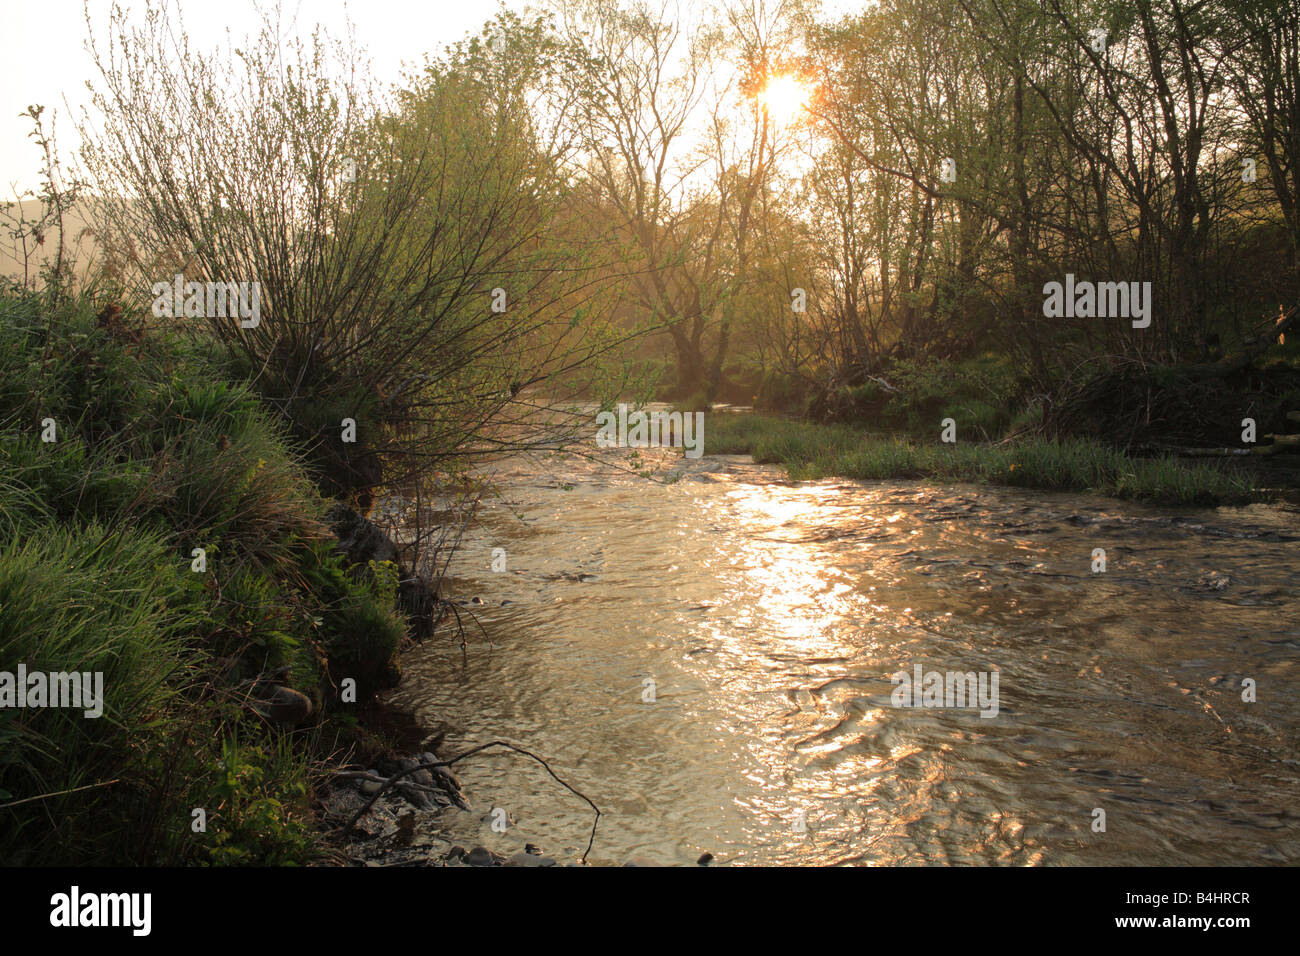 La rivière Severn au printemps. Un tronçon de la partie supérieure de la rivière à l'aube. Près de Llanidloes, Powys, Pays de Galles. Banque D'Images